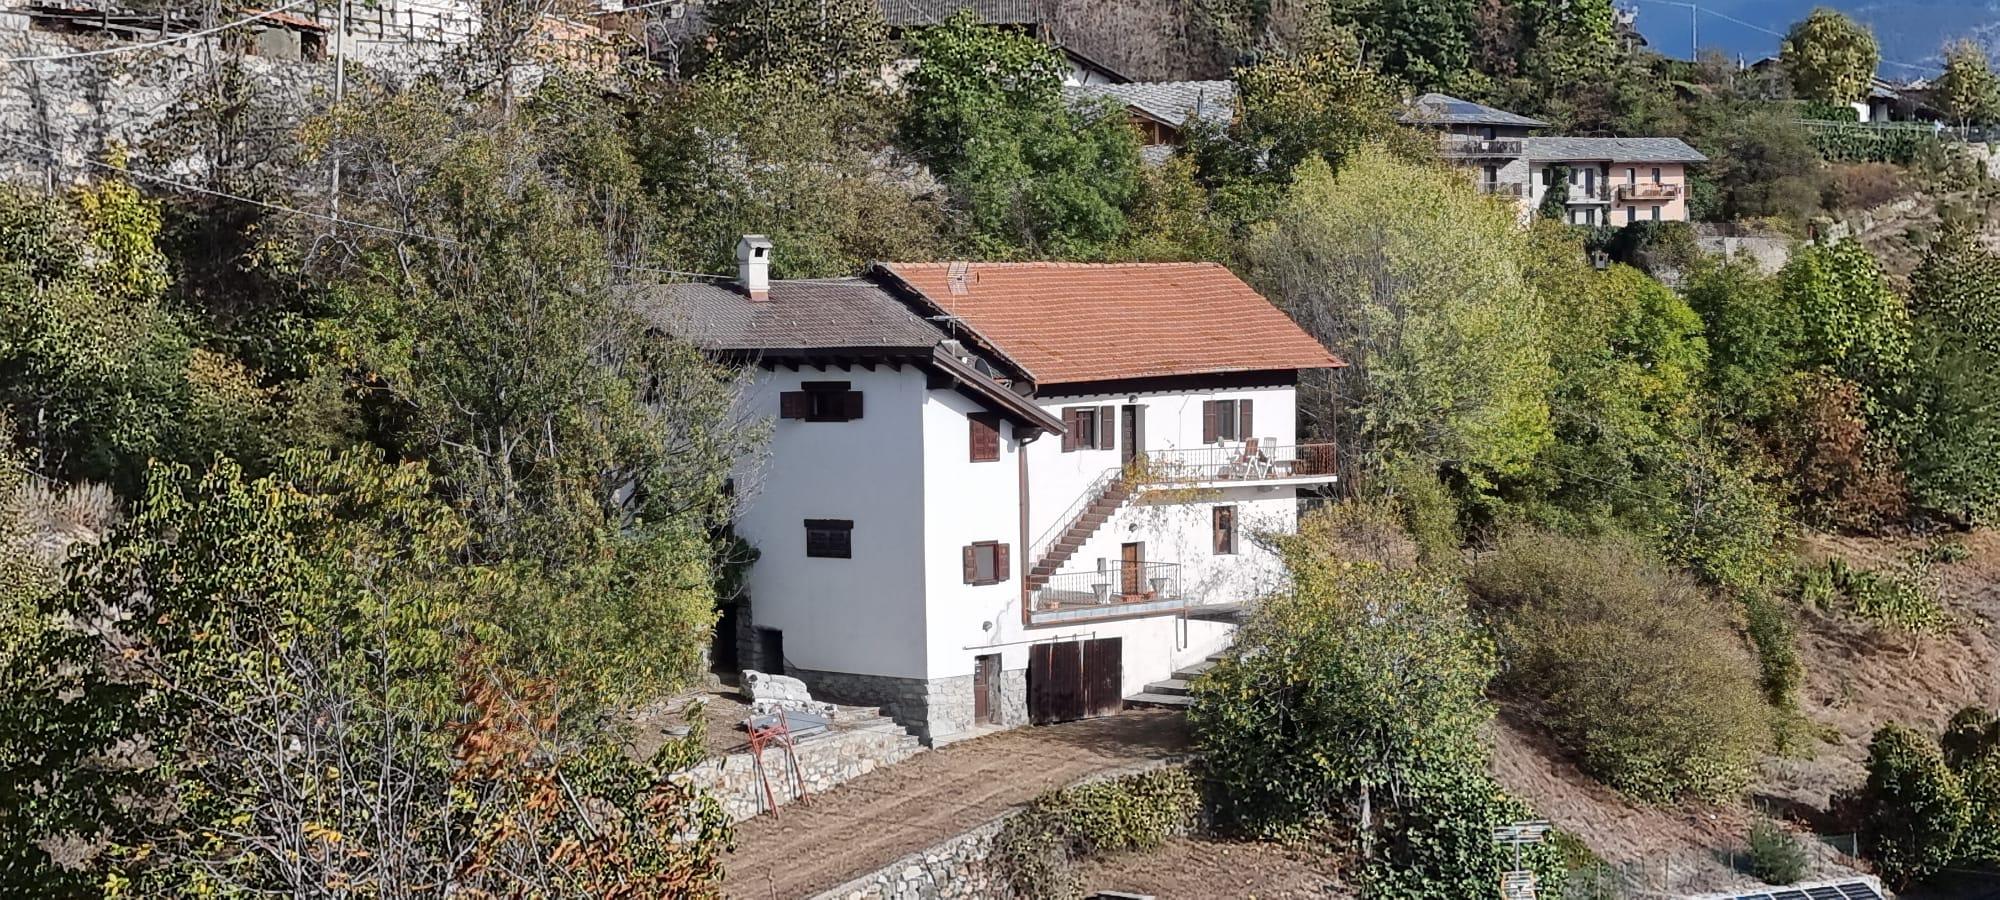 Villa bifamiliare Quart - Immagine# 1